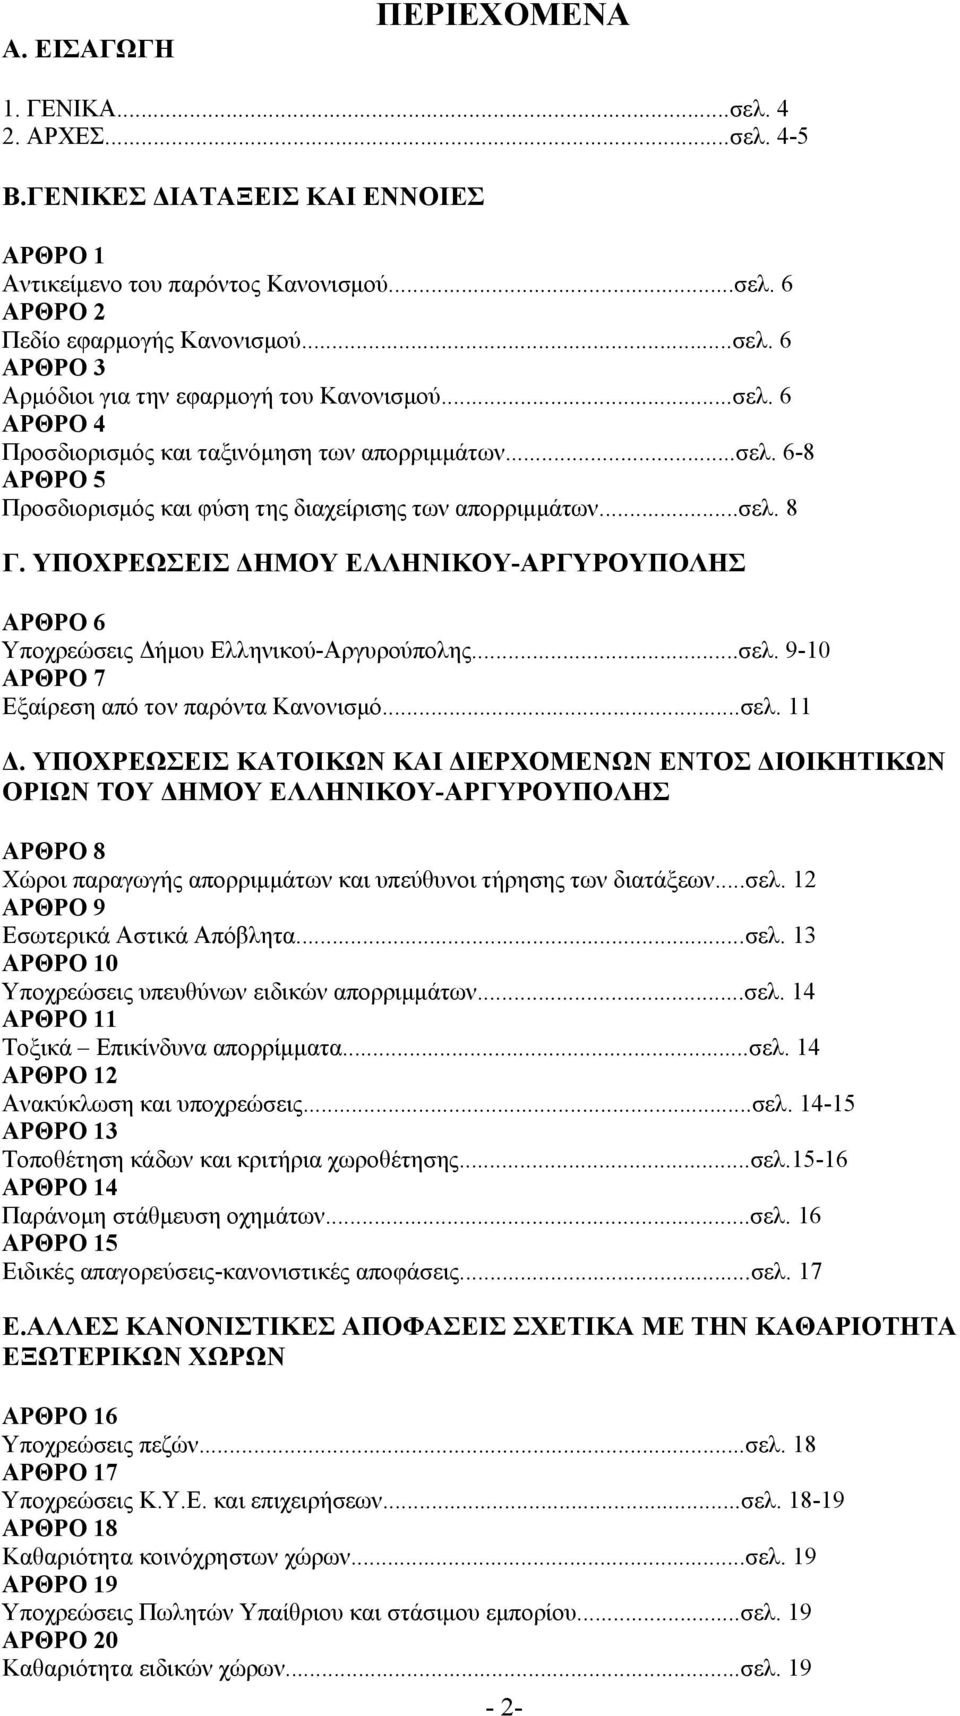 ΥΠΟΧΡΕΩΣΕΙΣ ΔΗΜΟΥ ΕΛΛΗΝΙΚΟΥ-ΑΡΓΥΡΟΥΠΟΛΗΣ ΑΡΘΡΟ 6 Υποχρεώσεις Δήμου Ελληνικού-Αργυρούπολης...σελ. 9-10 ΑΡΘΡΟ 7 Εξαίρεση από τον παρόντα Κανονισμό...σελ. 11 Δ.